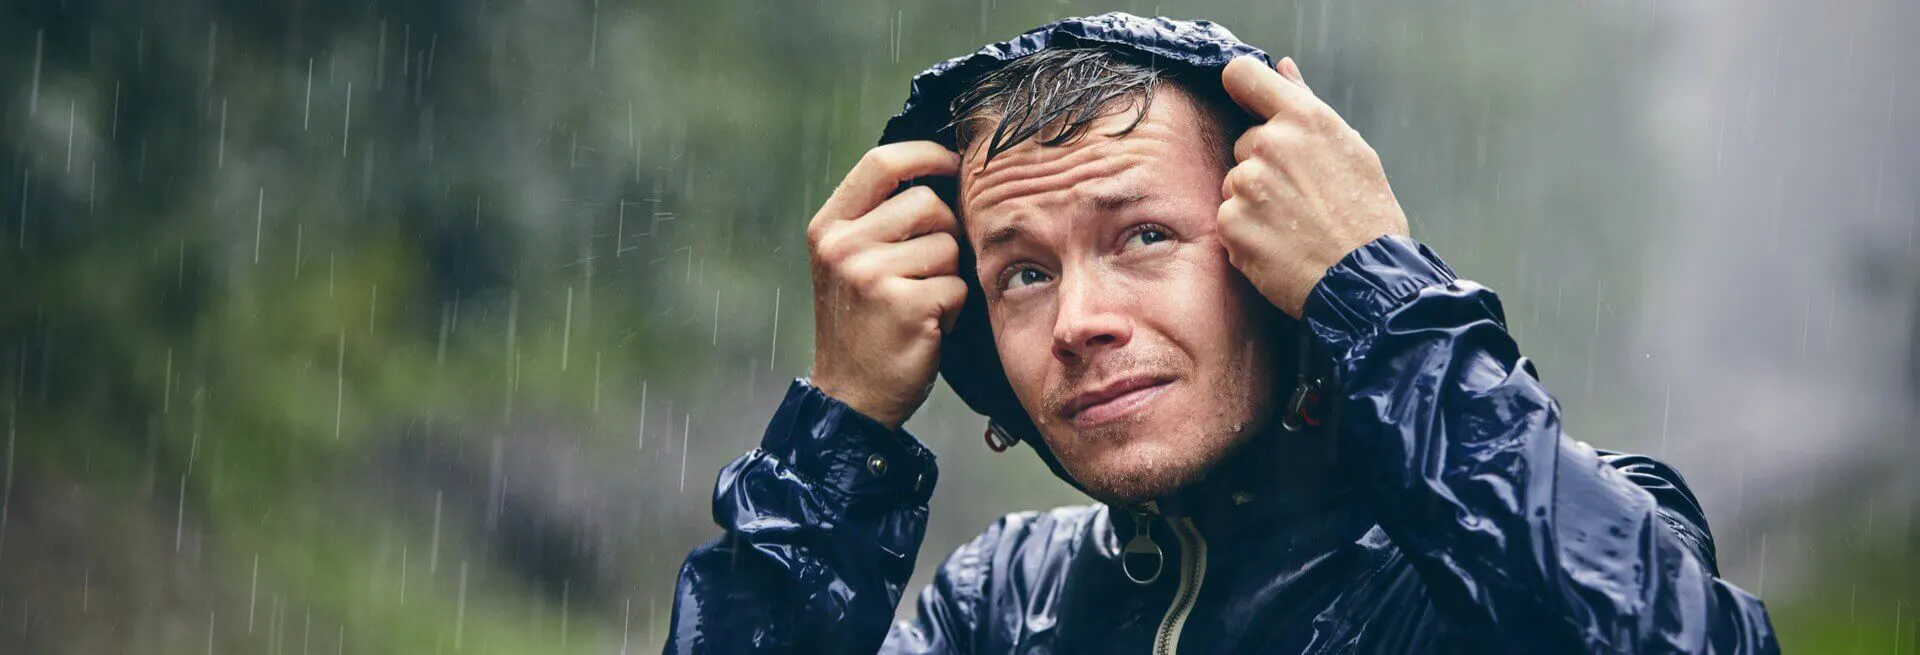 Homem com uma capa de chuva na chuva